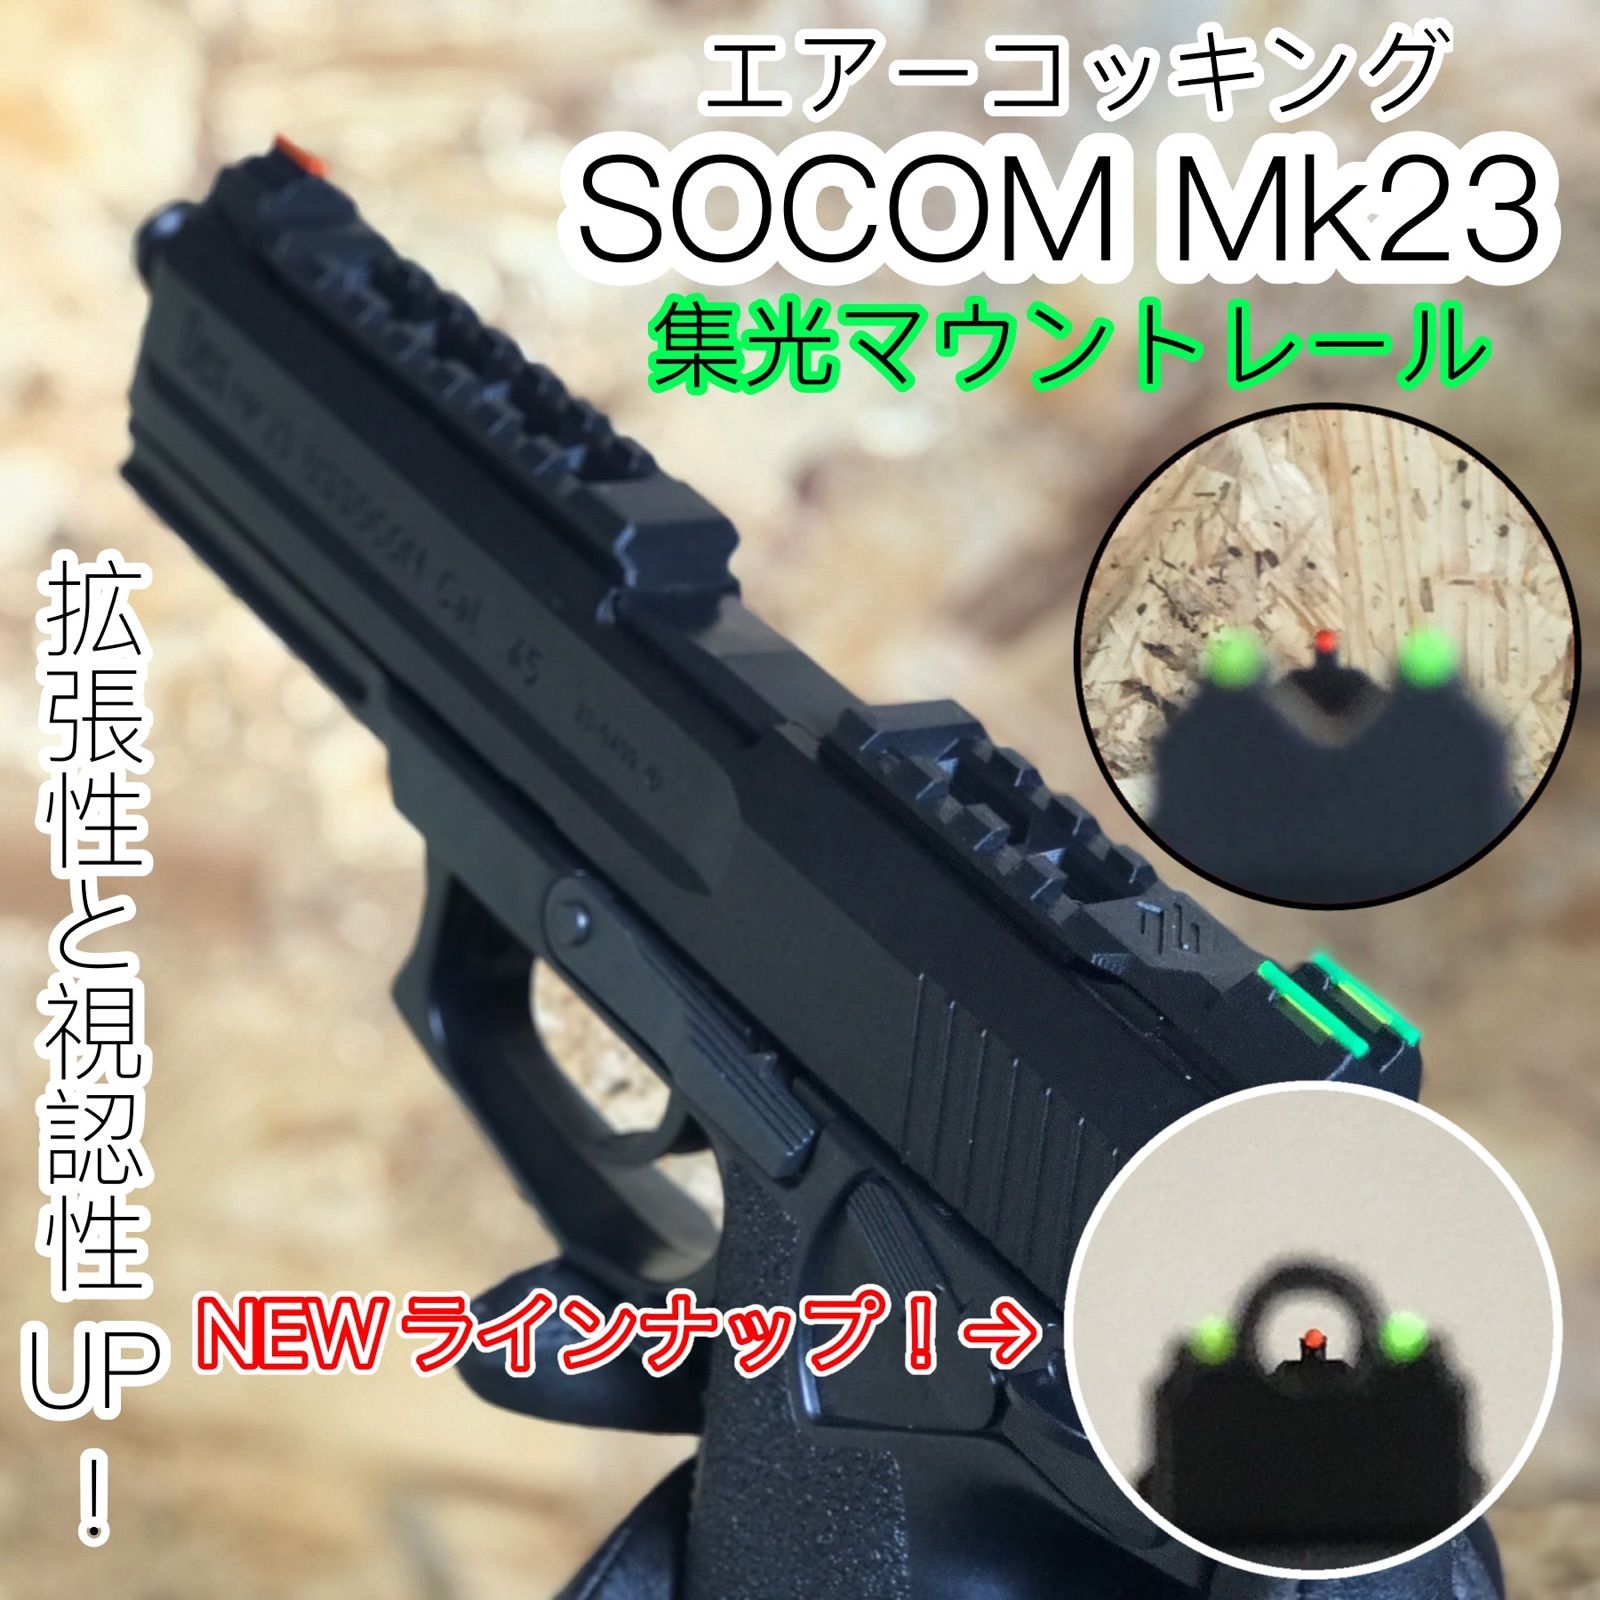 SOCOM MK23